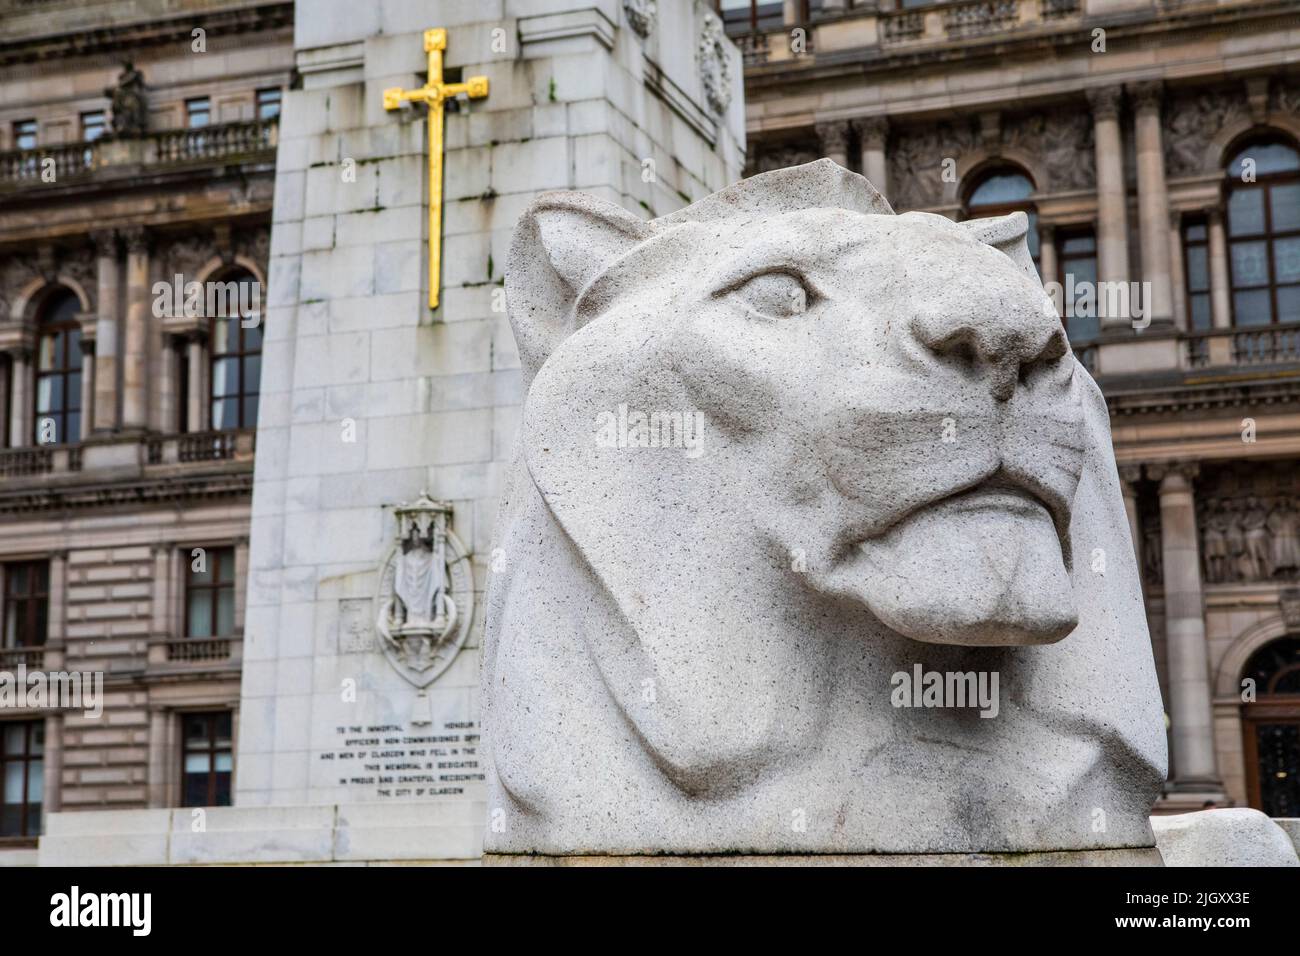 Primer plano de una de las famosas esculturas del león en el Glasgow Cenotaph, dedicado a aquellos que perdieron la vida en ambas guerras mundiales, en la ciudad de GLA Foto de stock